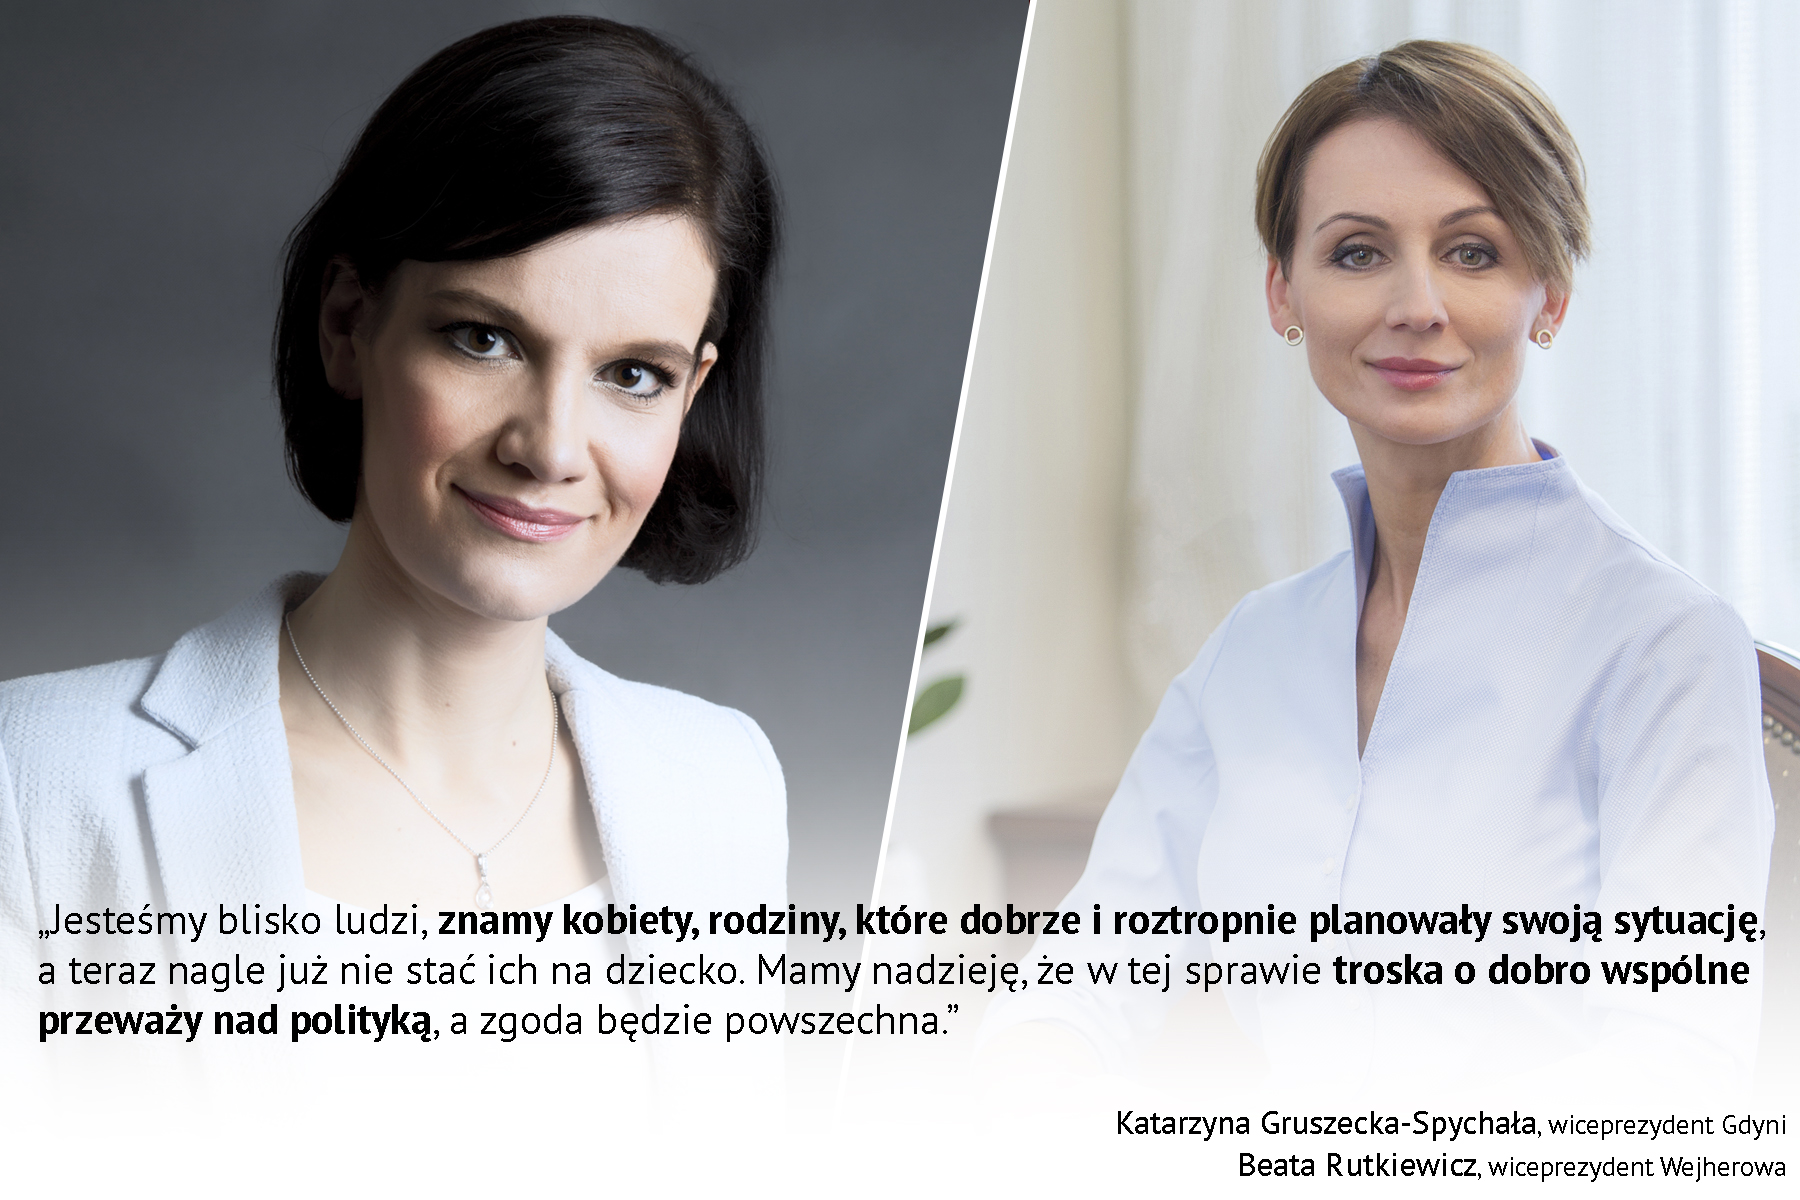 Po lewej: Katarzyna Gruszecka-Spychała - wiceprezydent Gdyni ds. gospodarki. Po prawej: Beata Rutkiewicz - zastępca prezydenta Wejherowa ds. rozwoju miasta